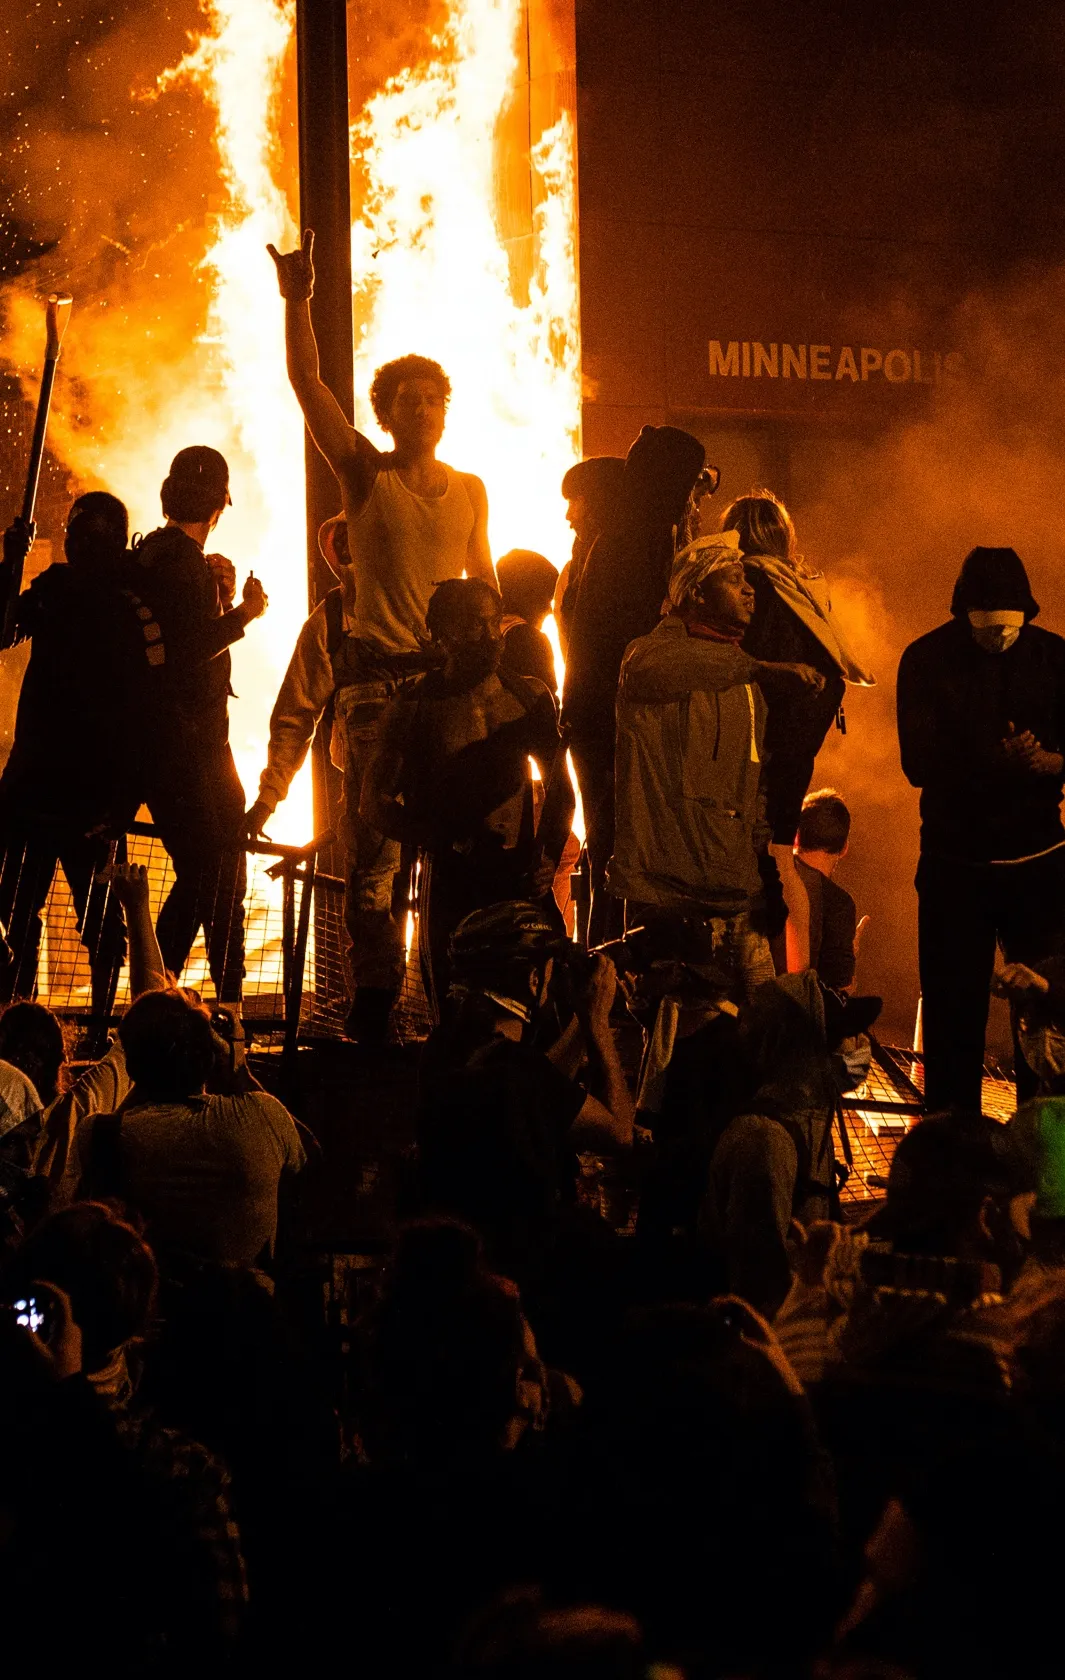 В США — массовые протесты и беспорядки: полицейские убили афроамериканца.  Миннеаполис горит, туда ввели войска — Meduza